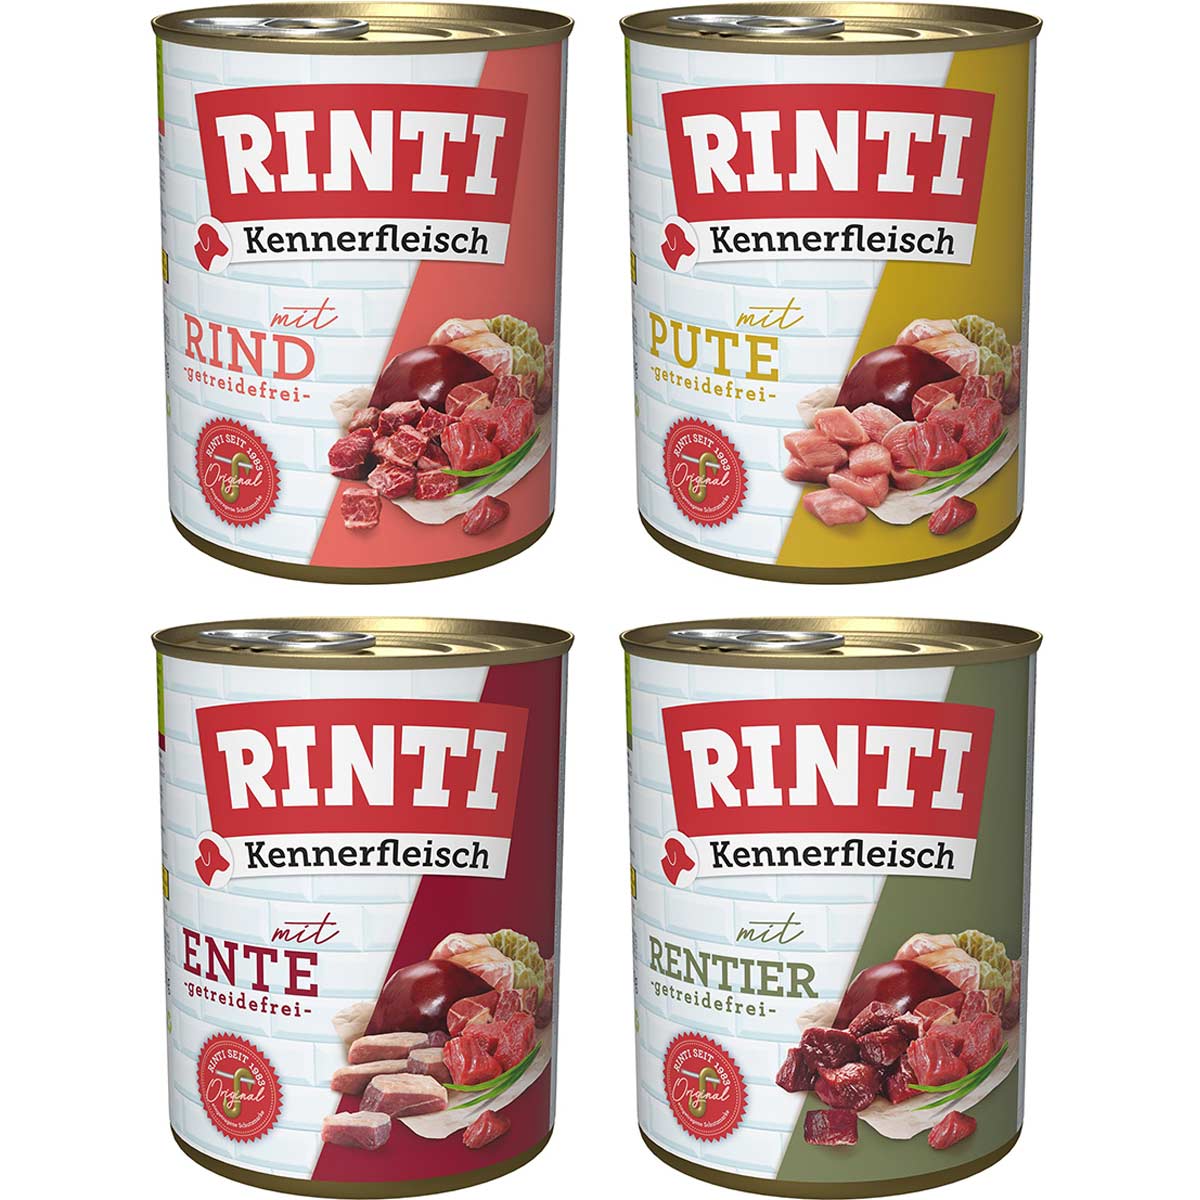 Rinti Kennerfleisch Paket 2 12x800g von Rinti